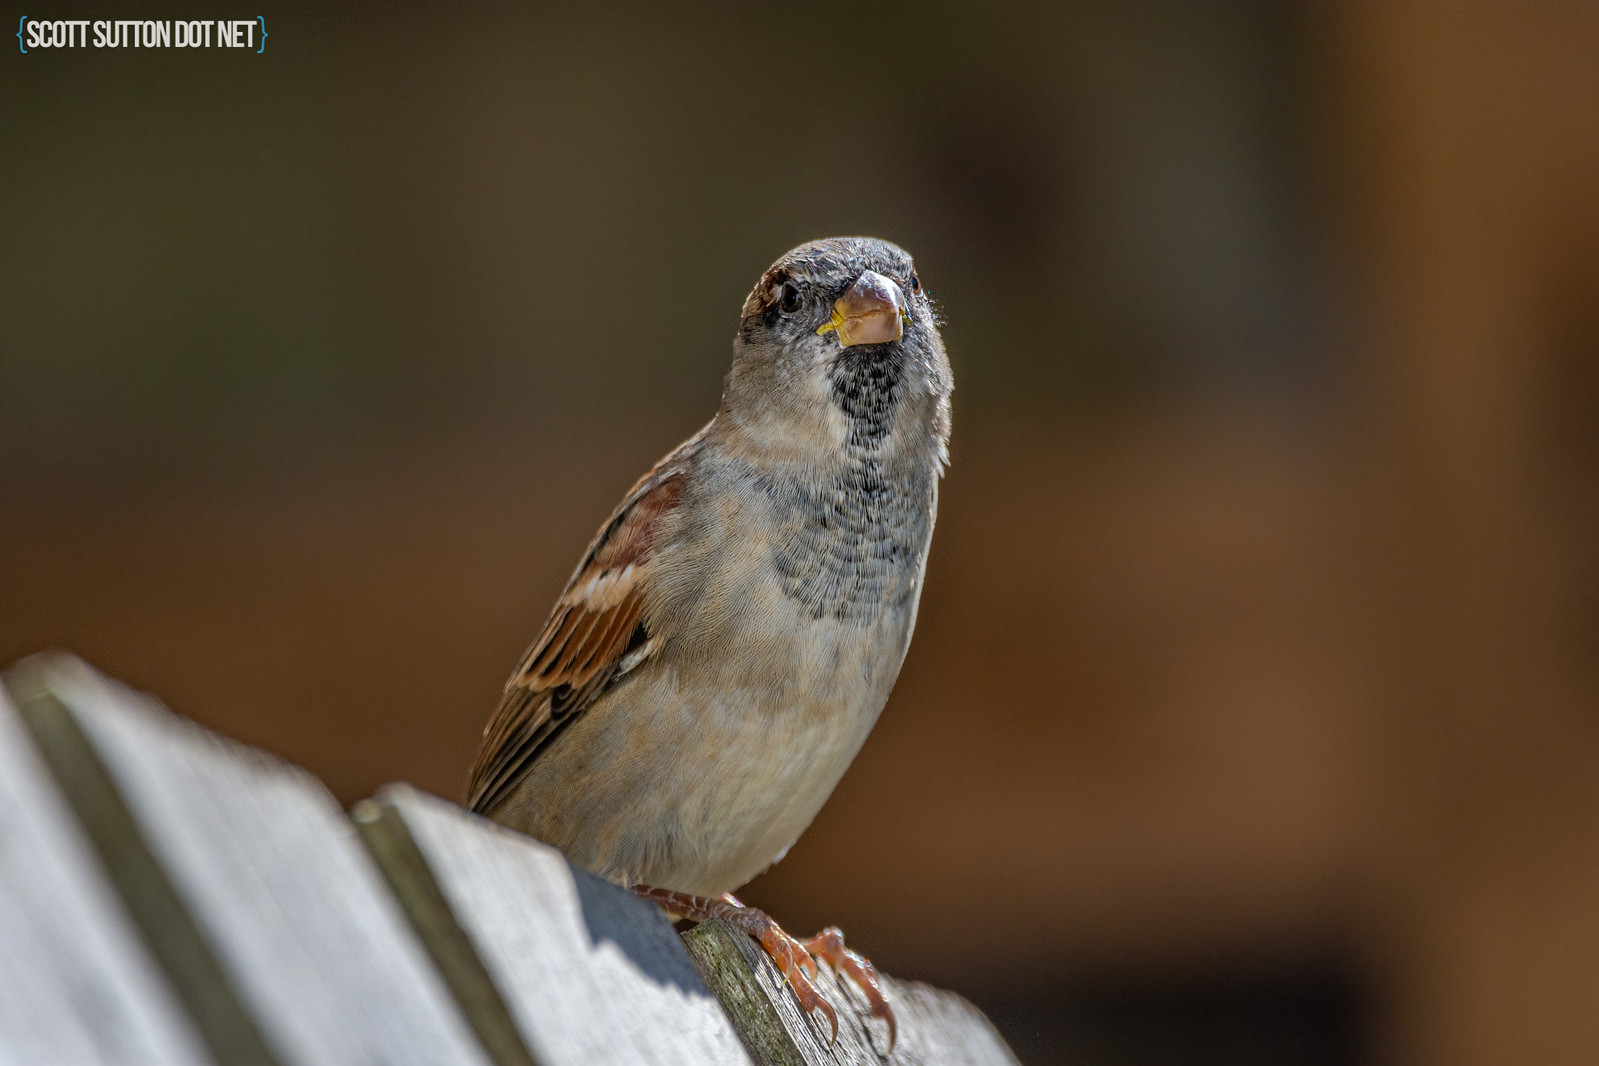 House Sparrow in the garden